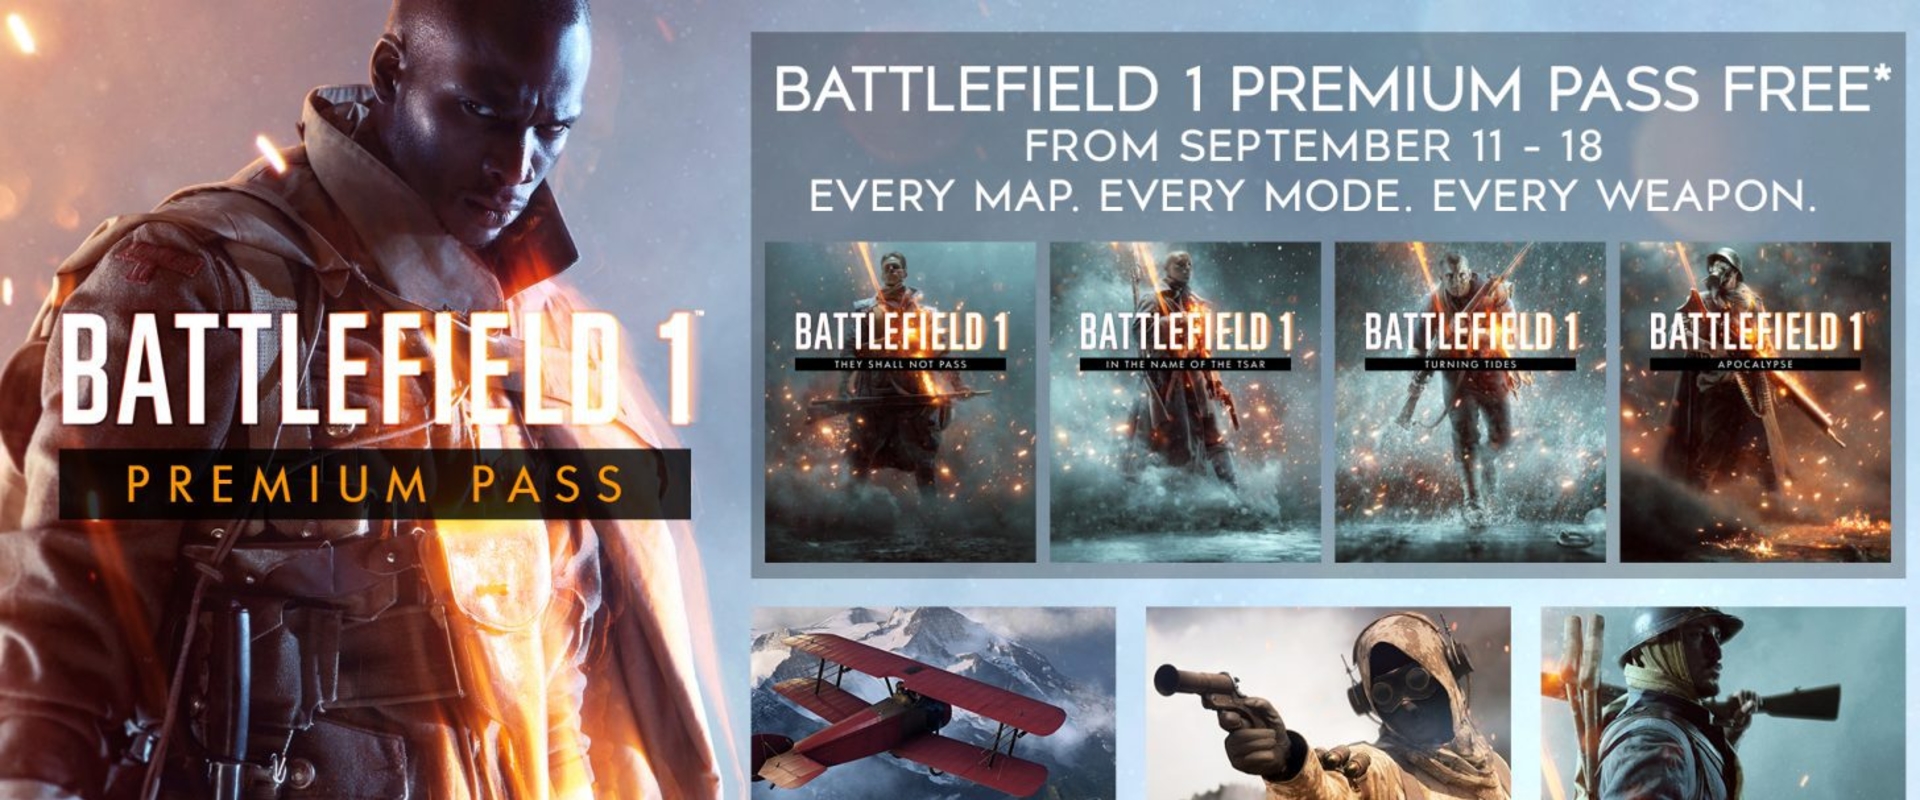 Már ingyen beszerezhető a Battlefield 1 Premium Pass!